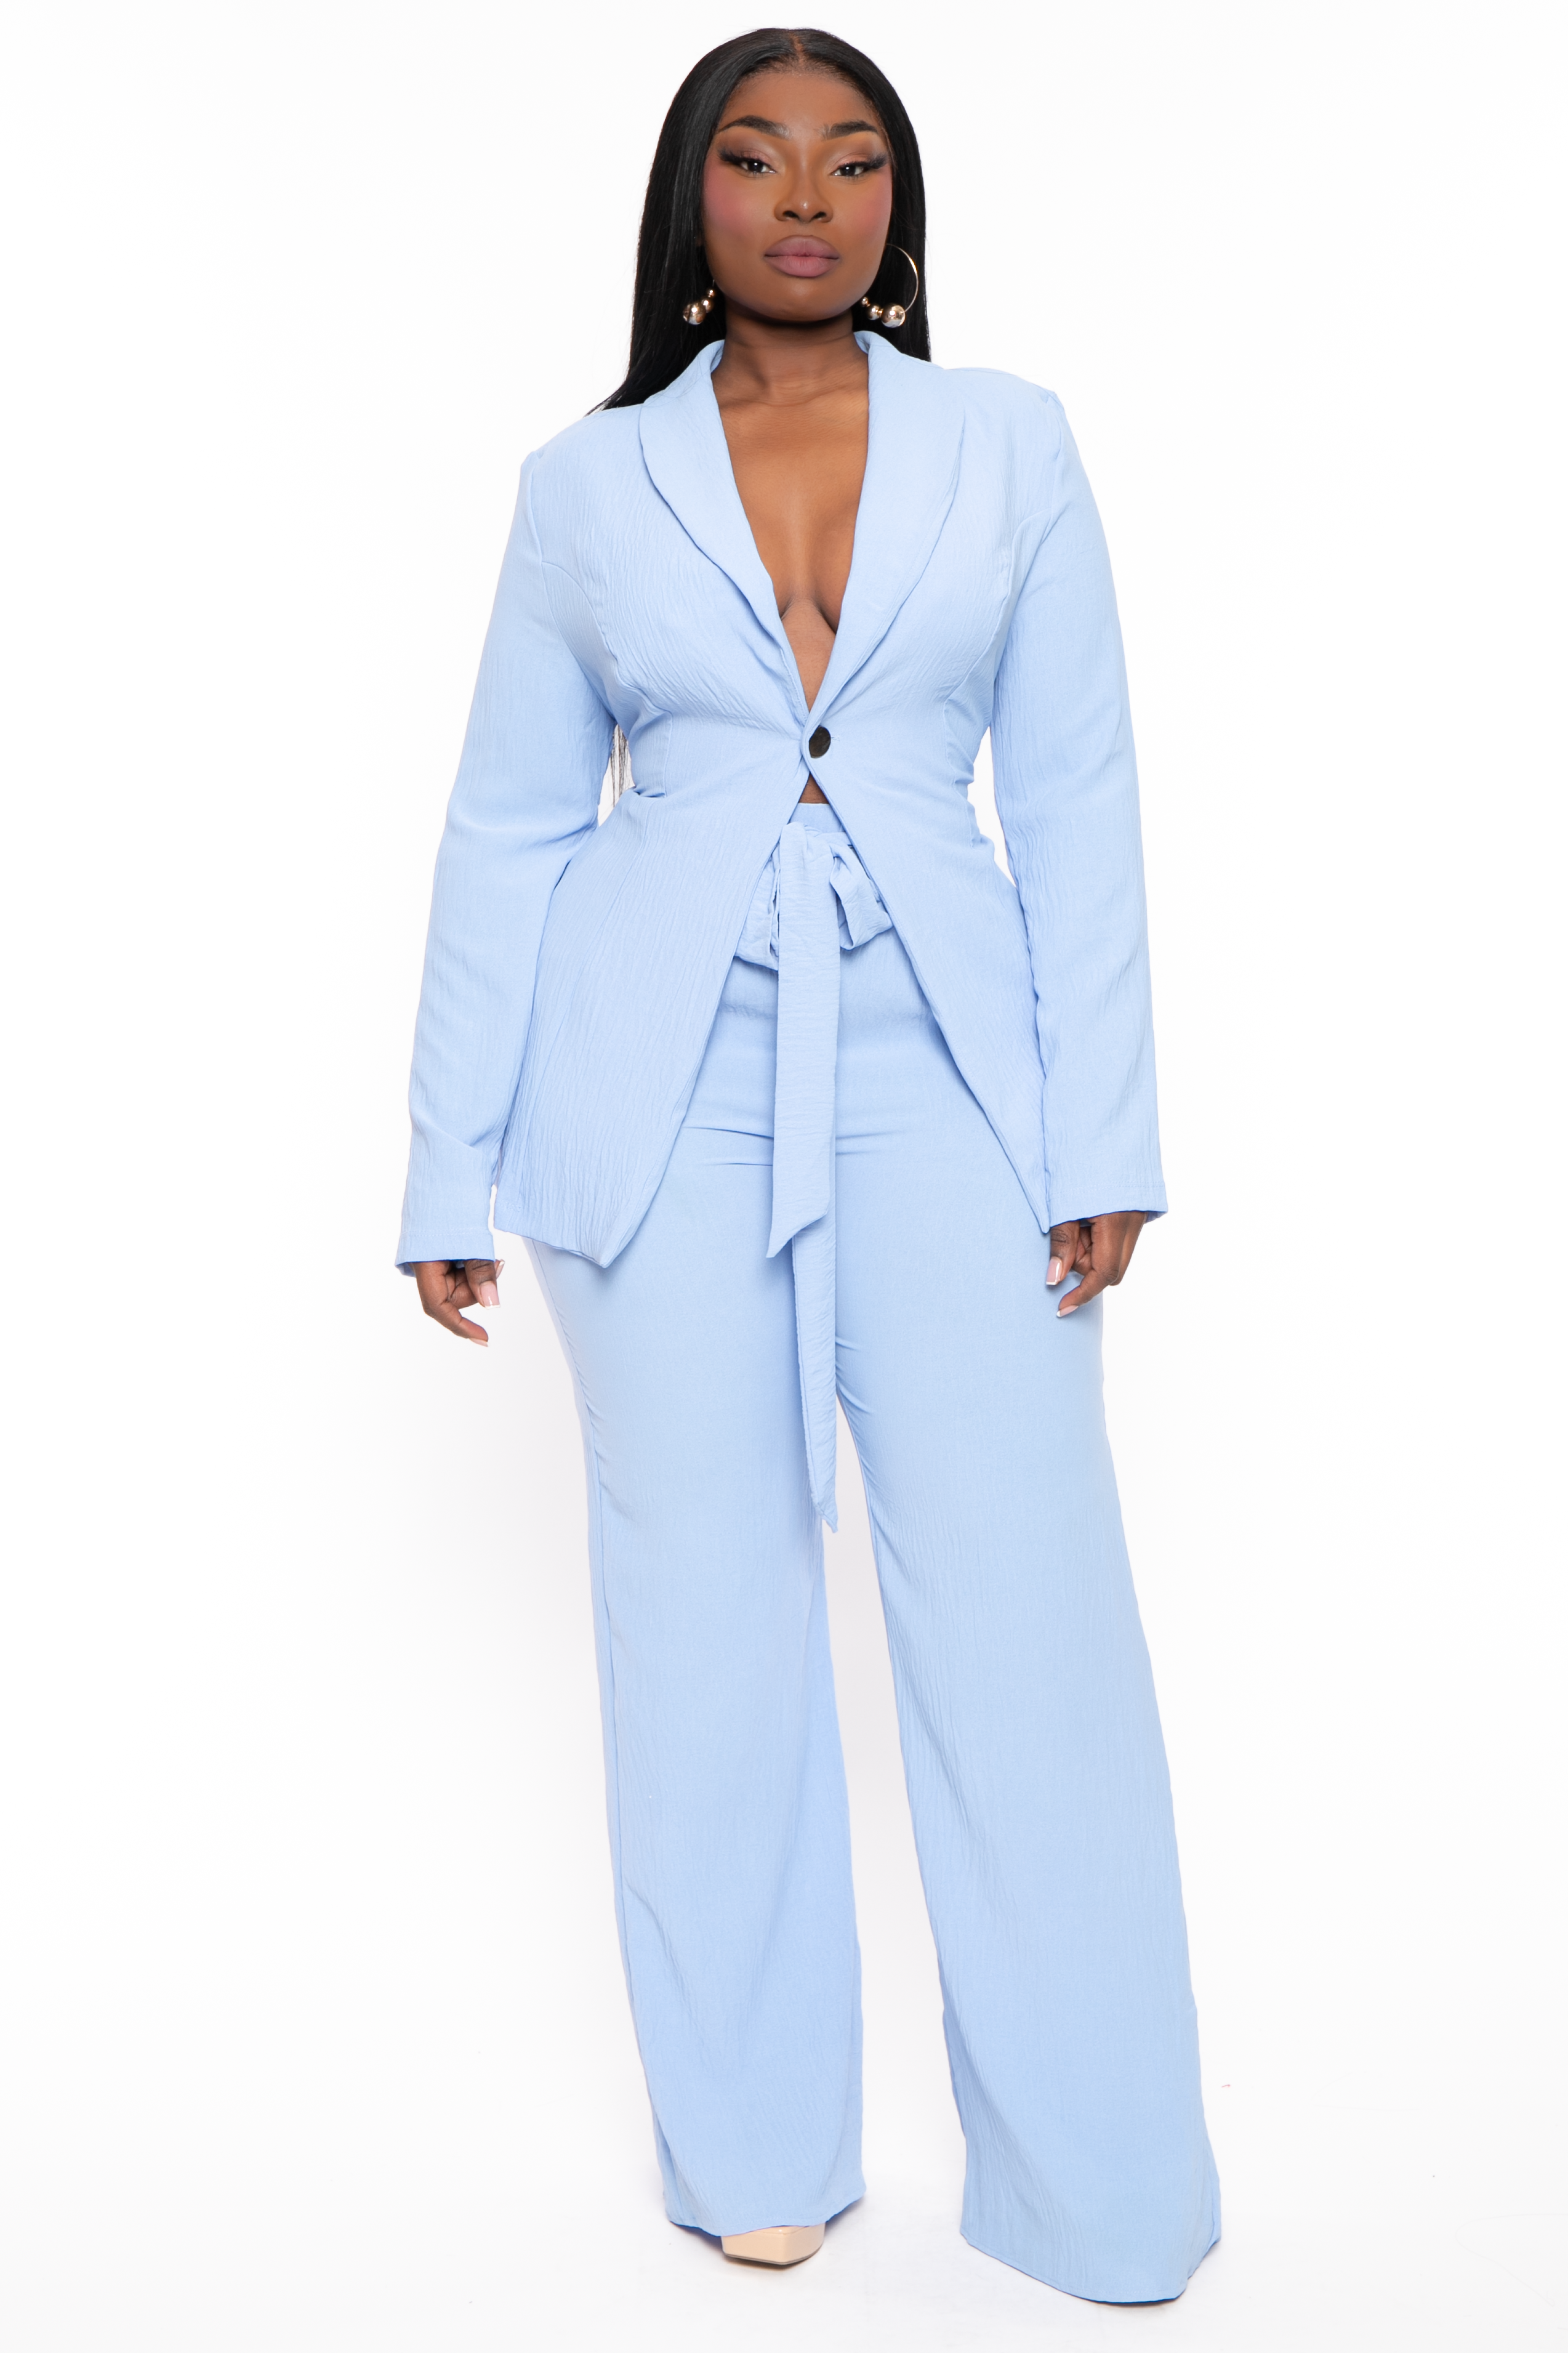 MDB 17092 ( Trouser Suit Design Image ) | Work suits for women, Suit  designs, Wedding pants